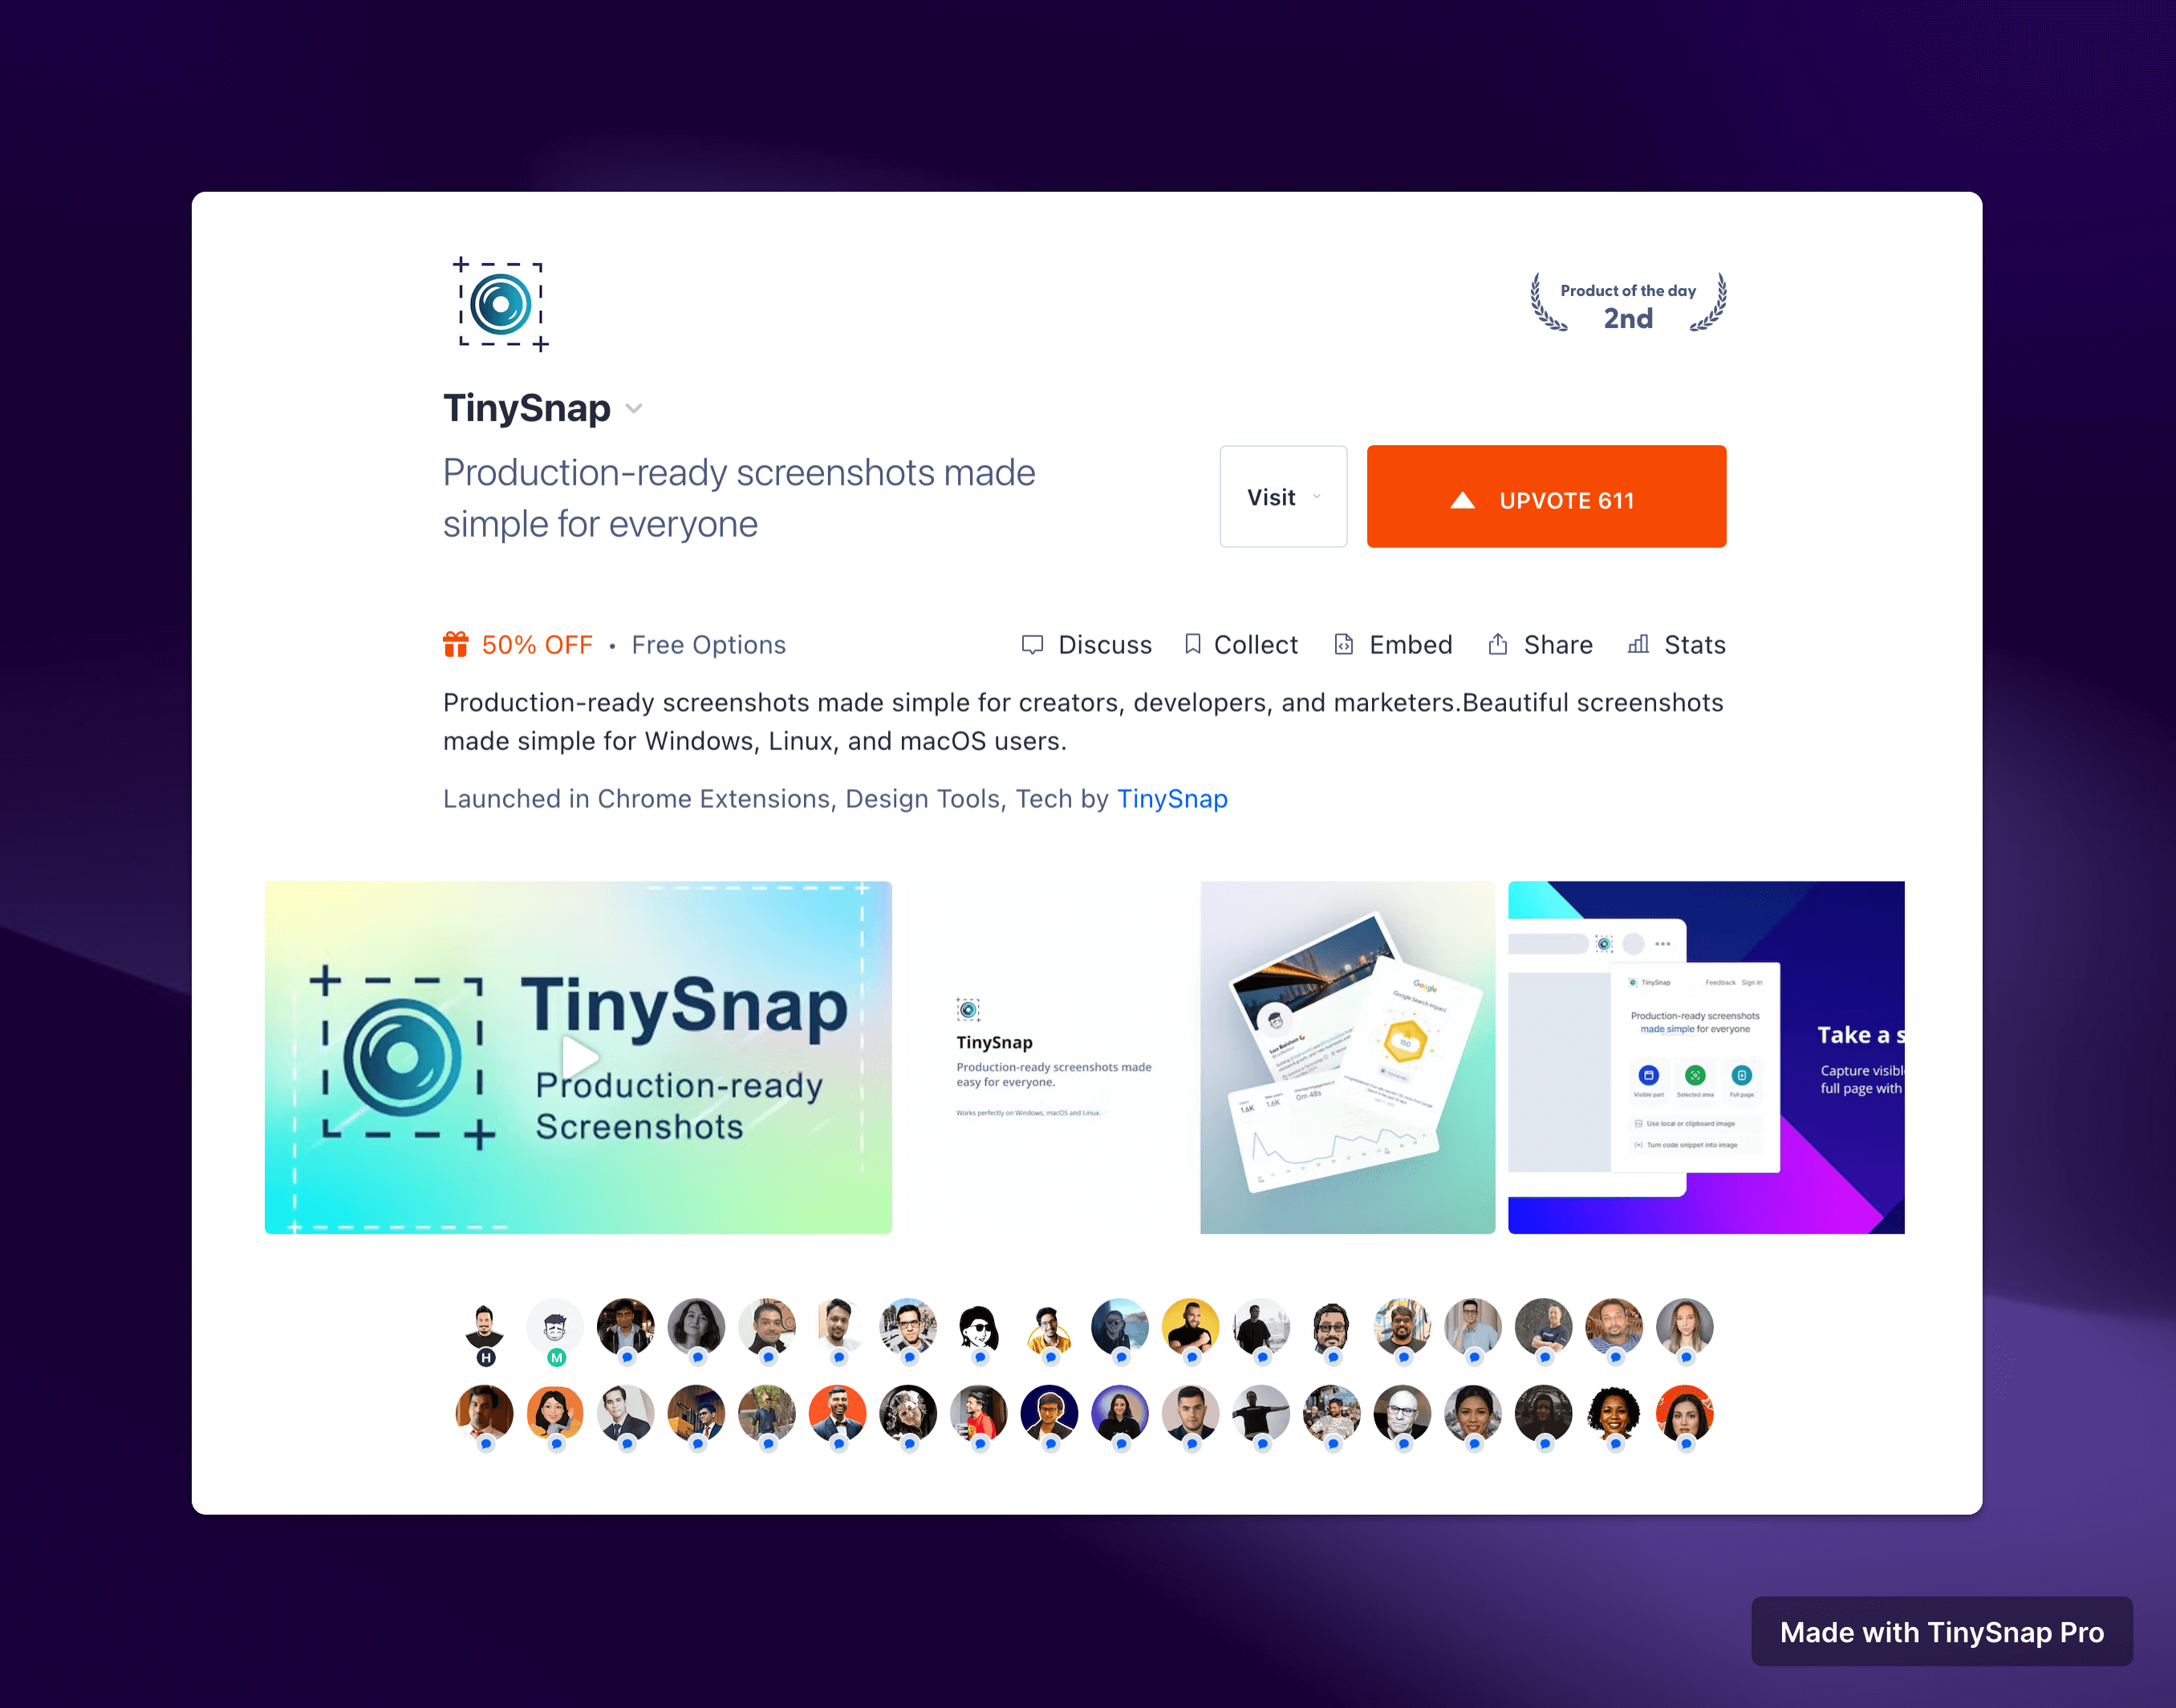 TinySnap Product Hunt Launch Summary